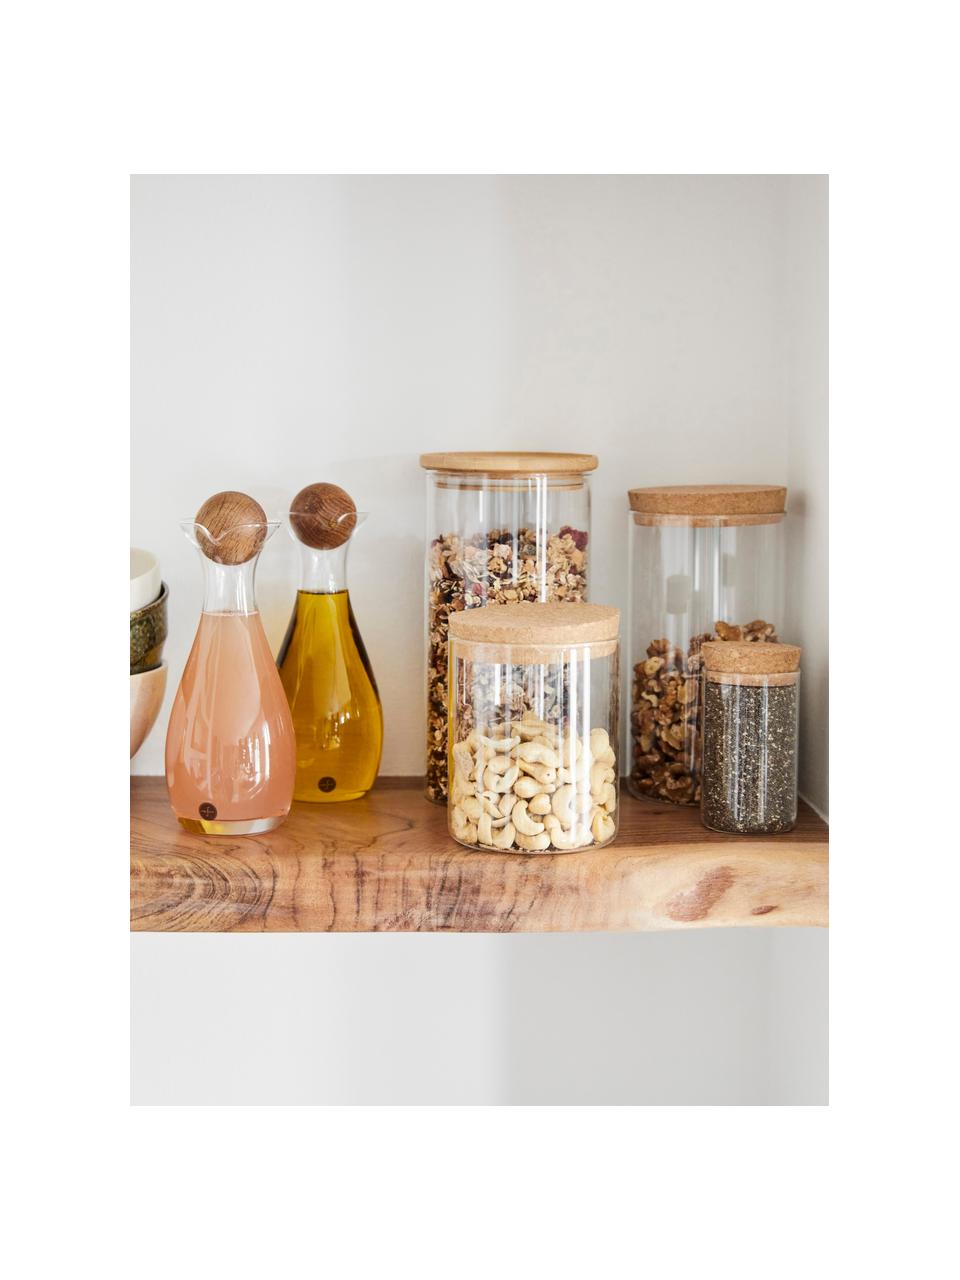 Set olio e aceto in vetro soffiatocon tappi in legno Eden 2 pz, Contenitore: vetro soffiato, Trasparente, legno scuro, Ø 8 x Alt. 19 cm